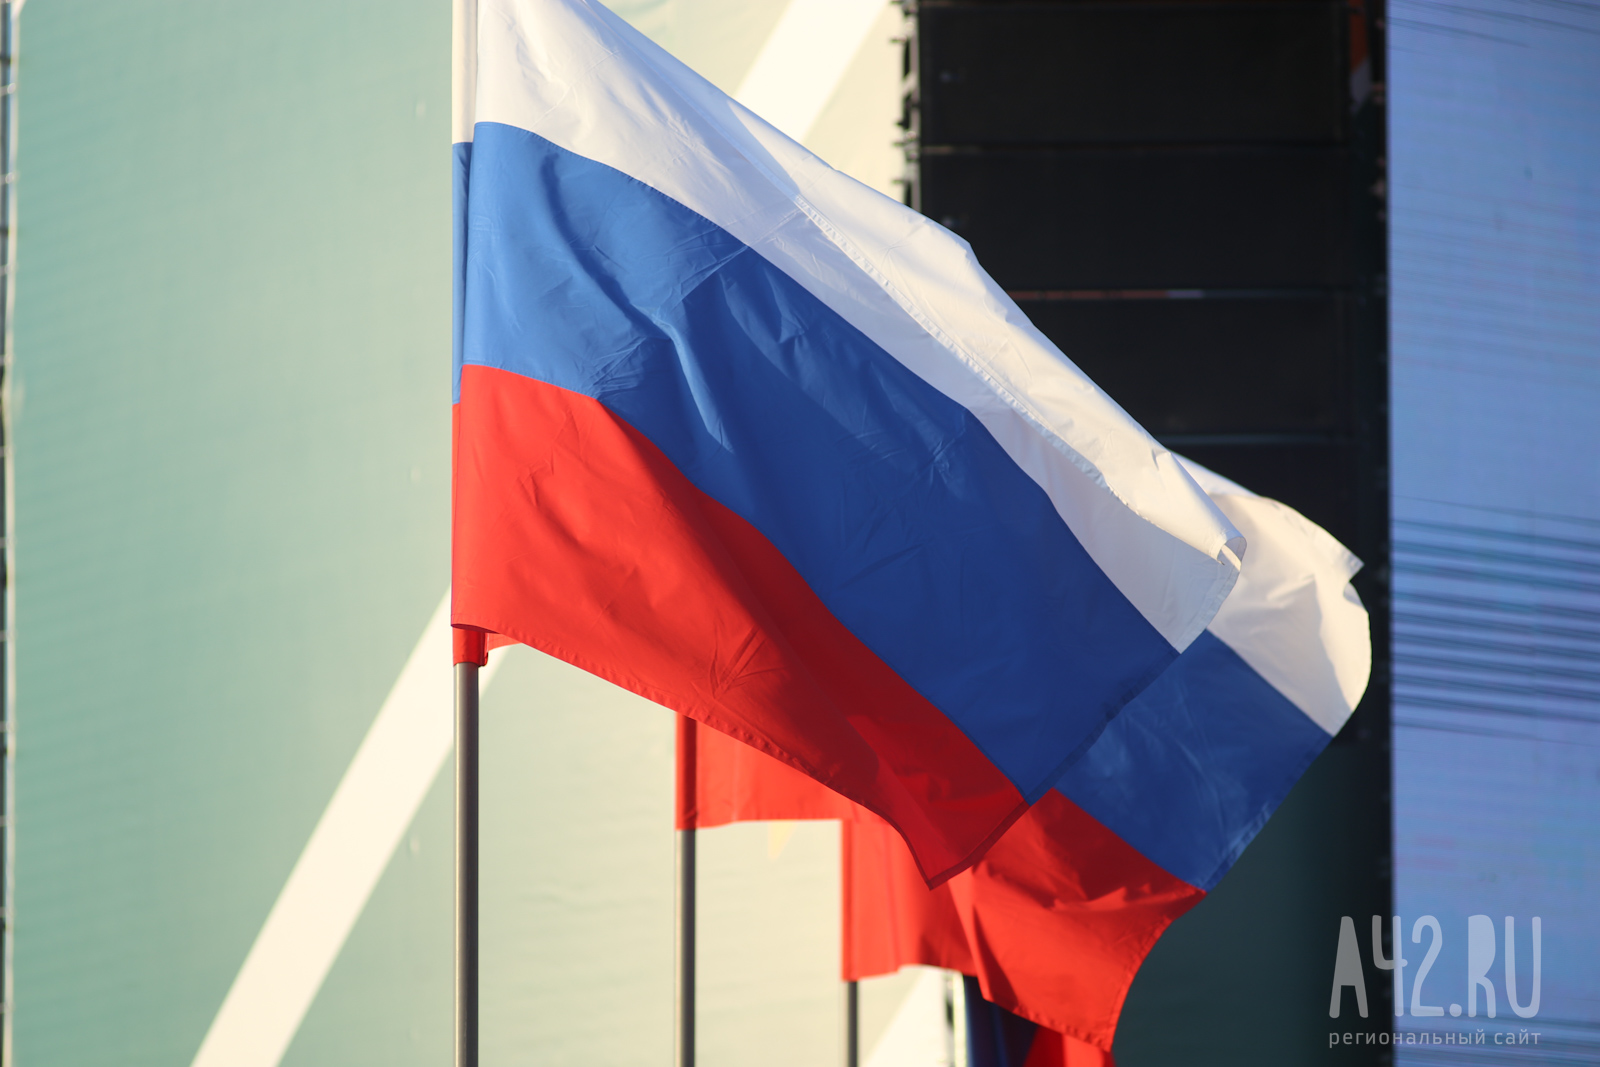 «Красиво и празднично»:  кемеровчанина возмутили перевёрнутые российские флаги